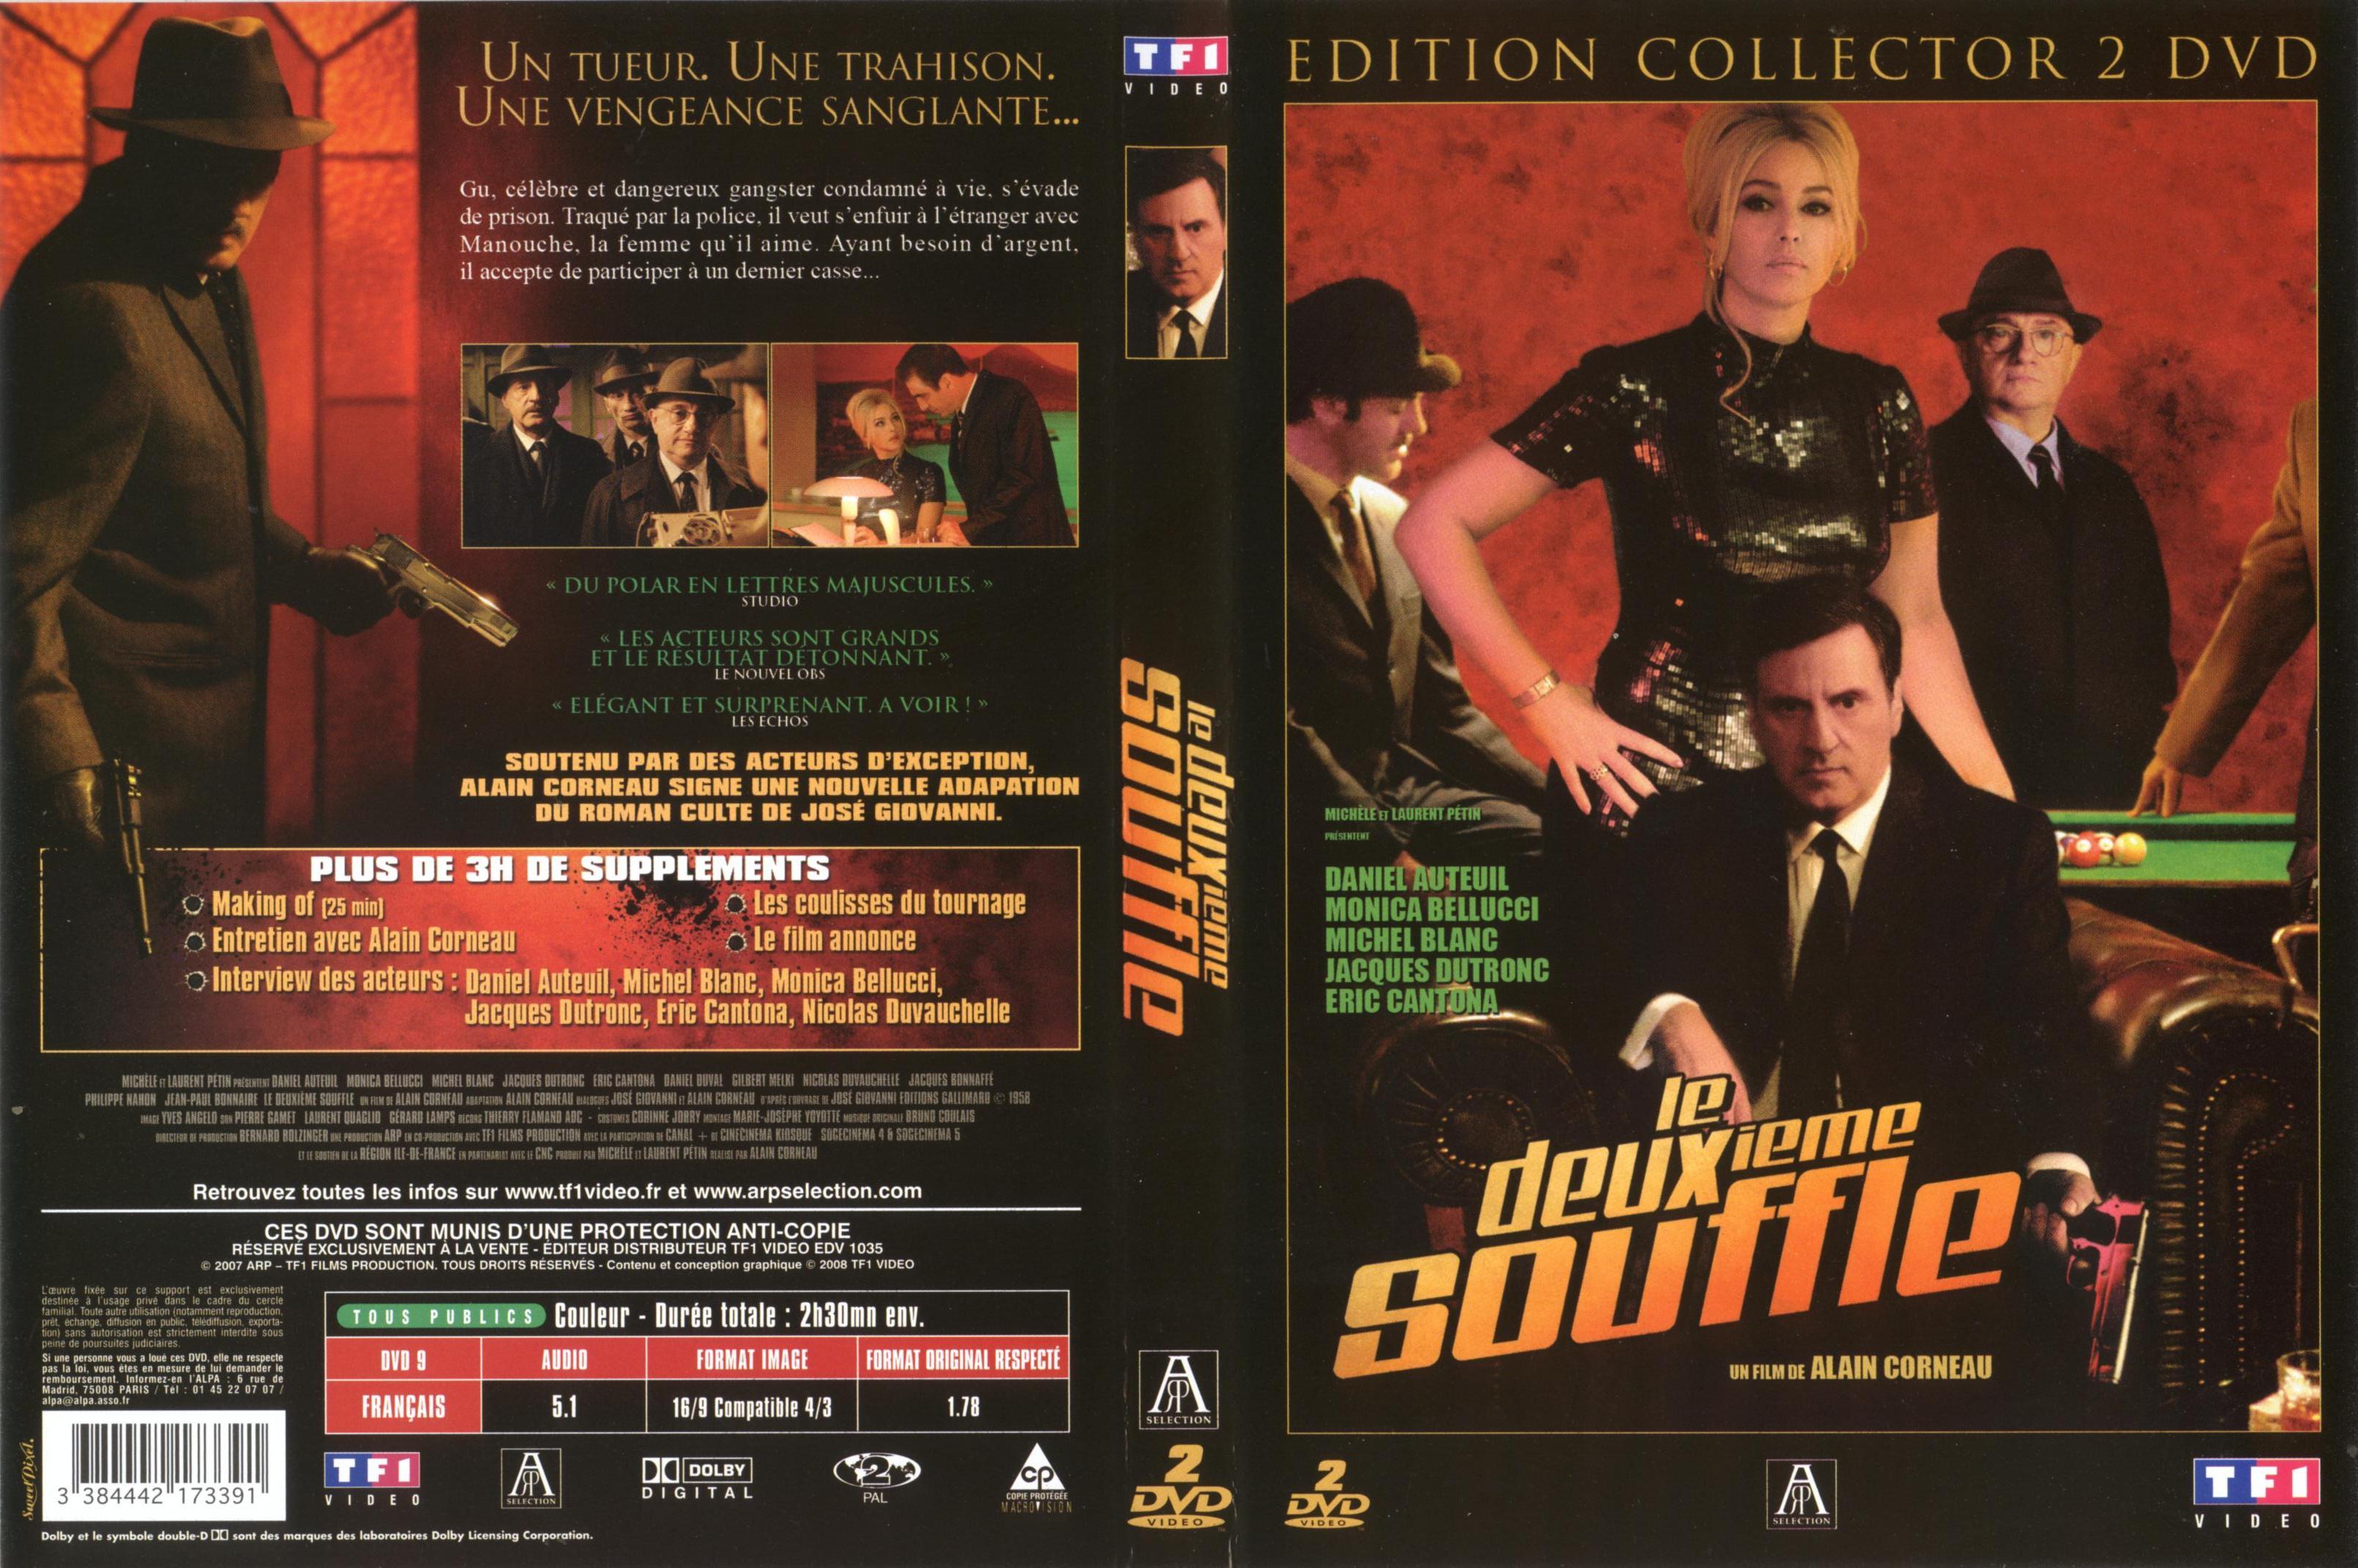 Jaquette DVD Le deuxieme souffle (2007)